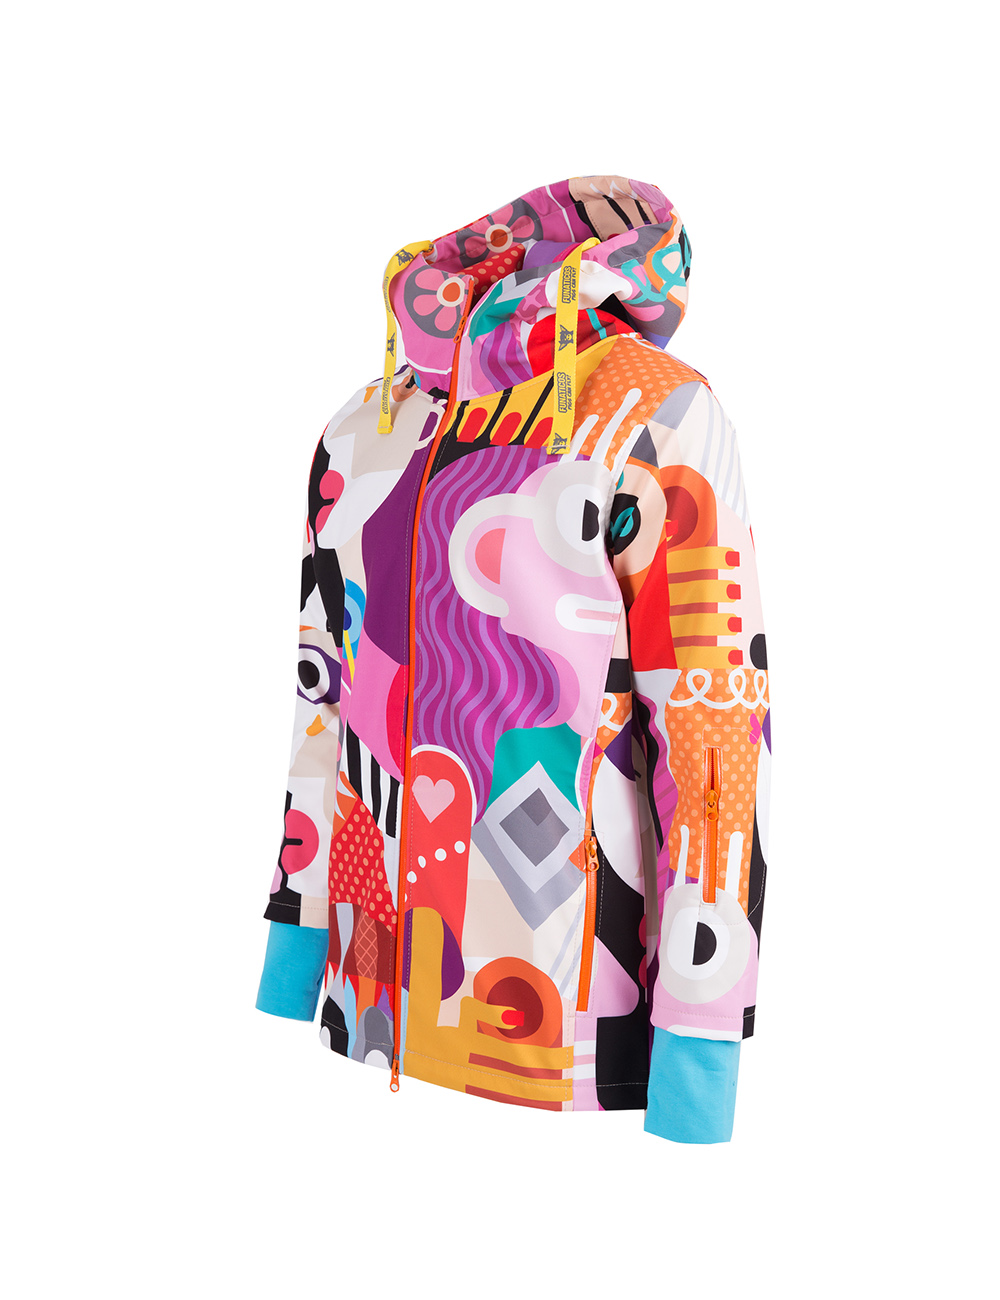 Rozpinana, softshellowa kurtka z kapturem w kubistyczne, kolorowe wzory.